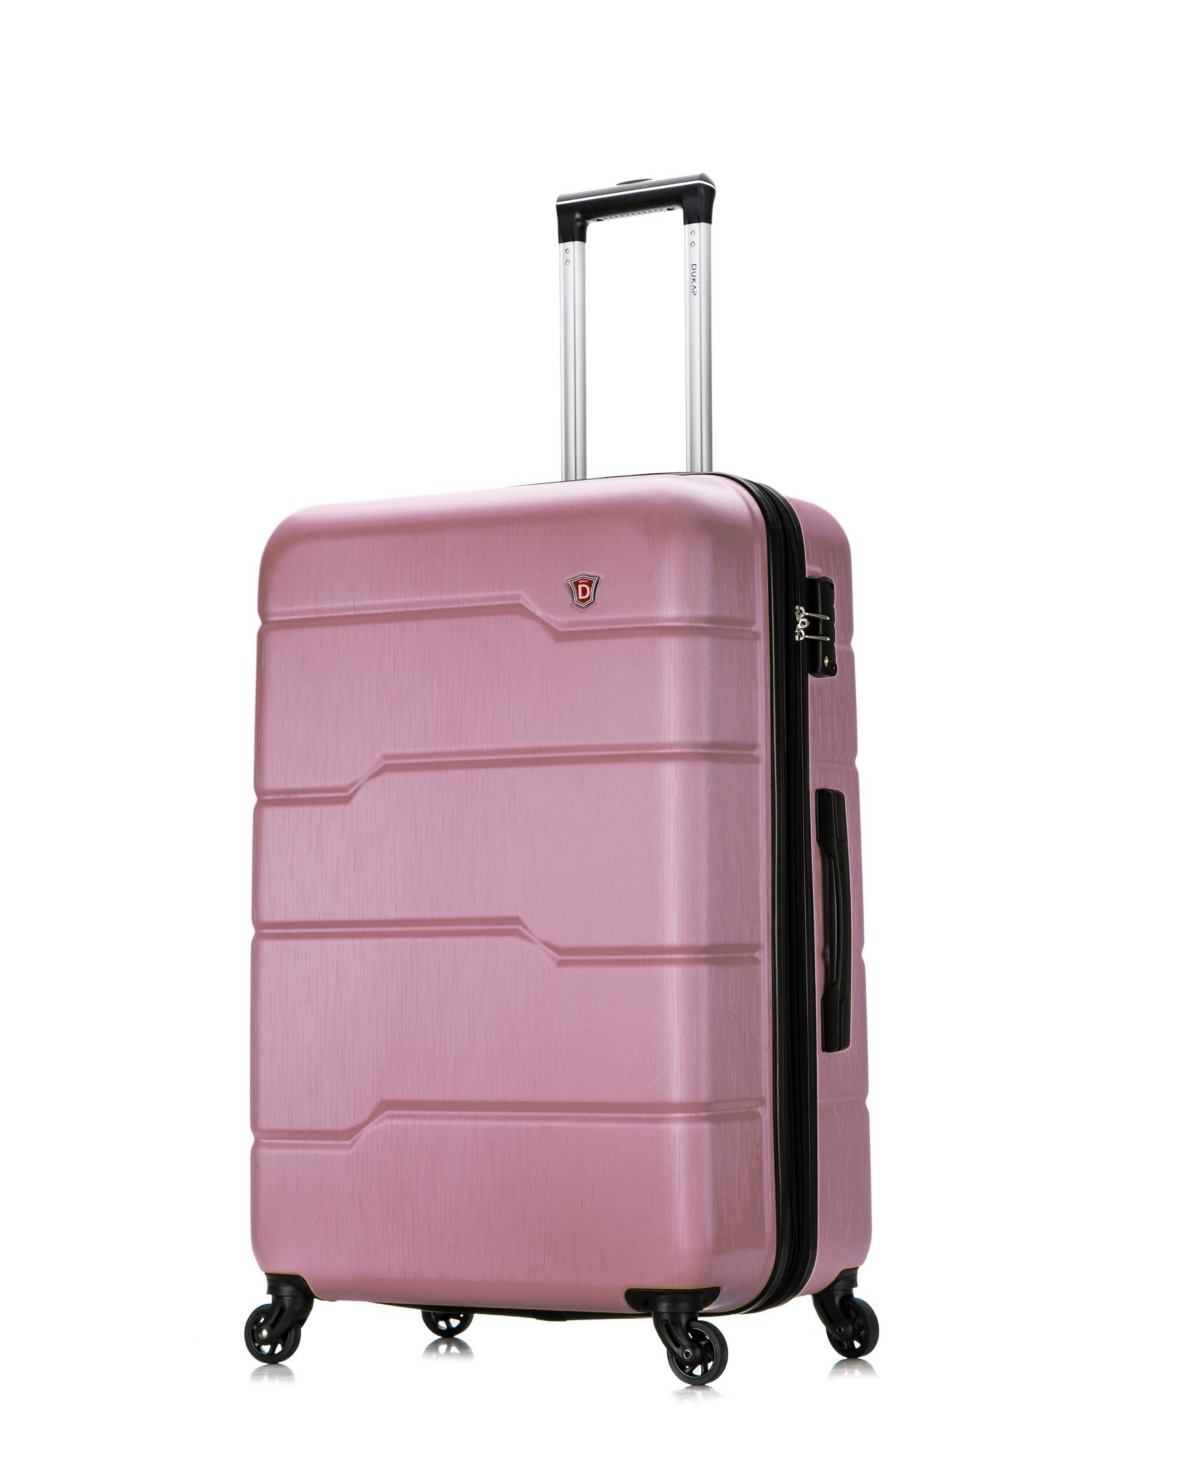 Rodez 28" Lightweight Hardside Spinner Luggage - Rose Gold